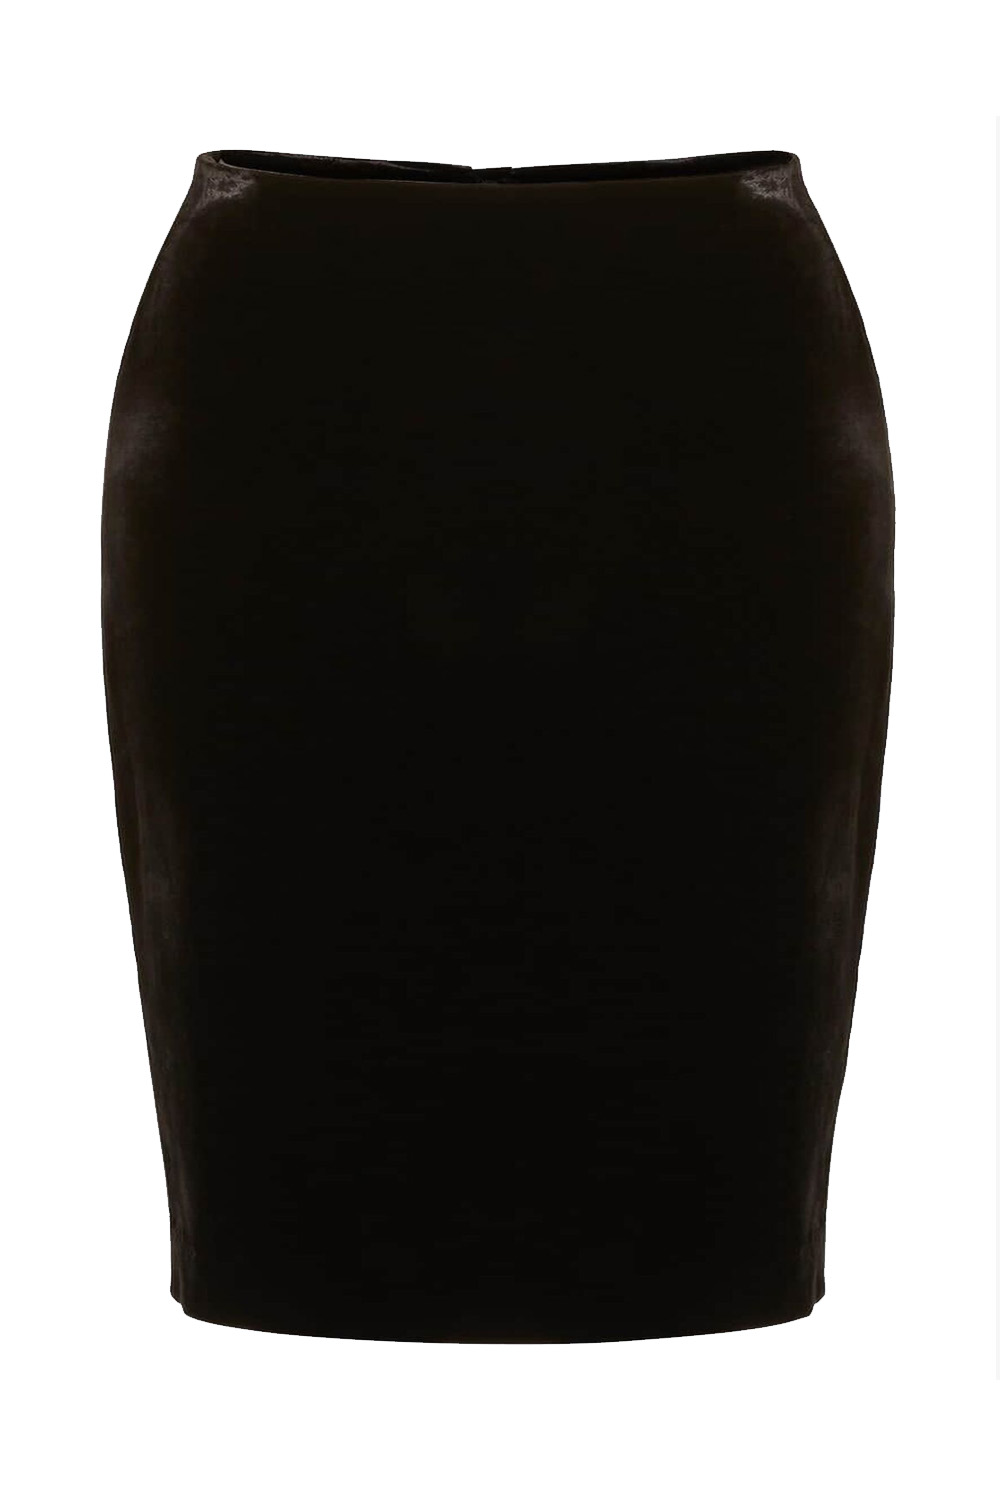 Black Velvet Knee Length Pencil Skirt, Image 6 of 6